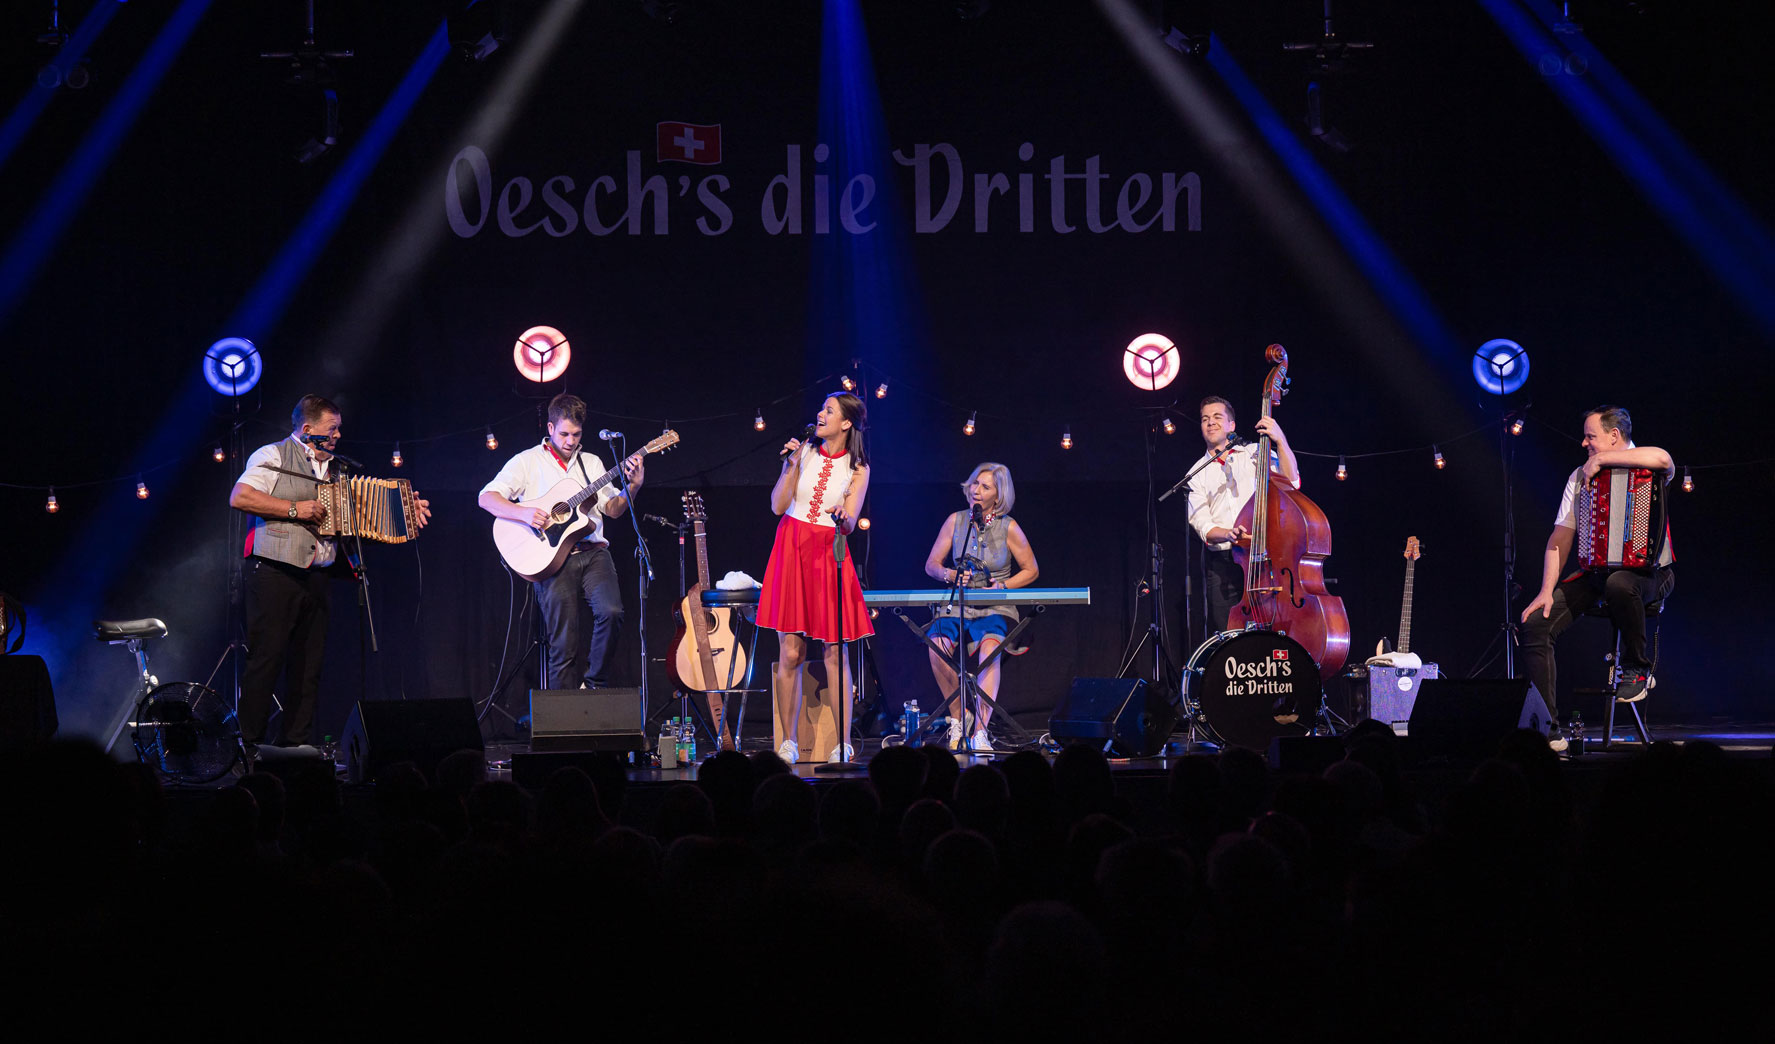 die Schweizer Volksmusikgruppe Oesch's die Dritten auf der Bühne